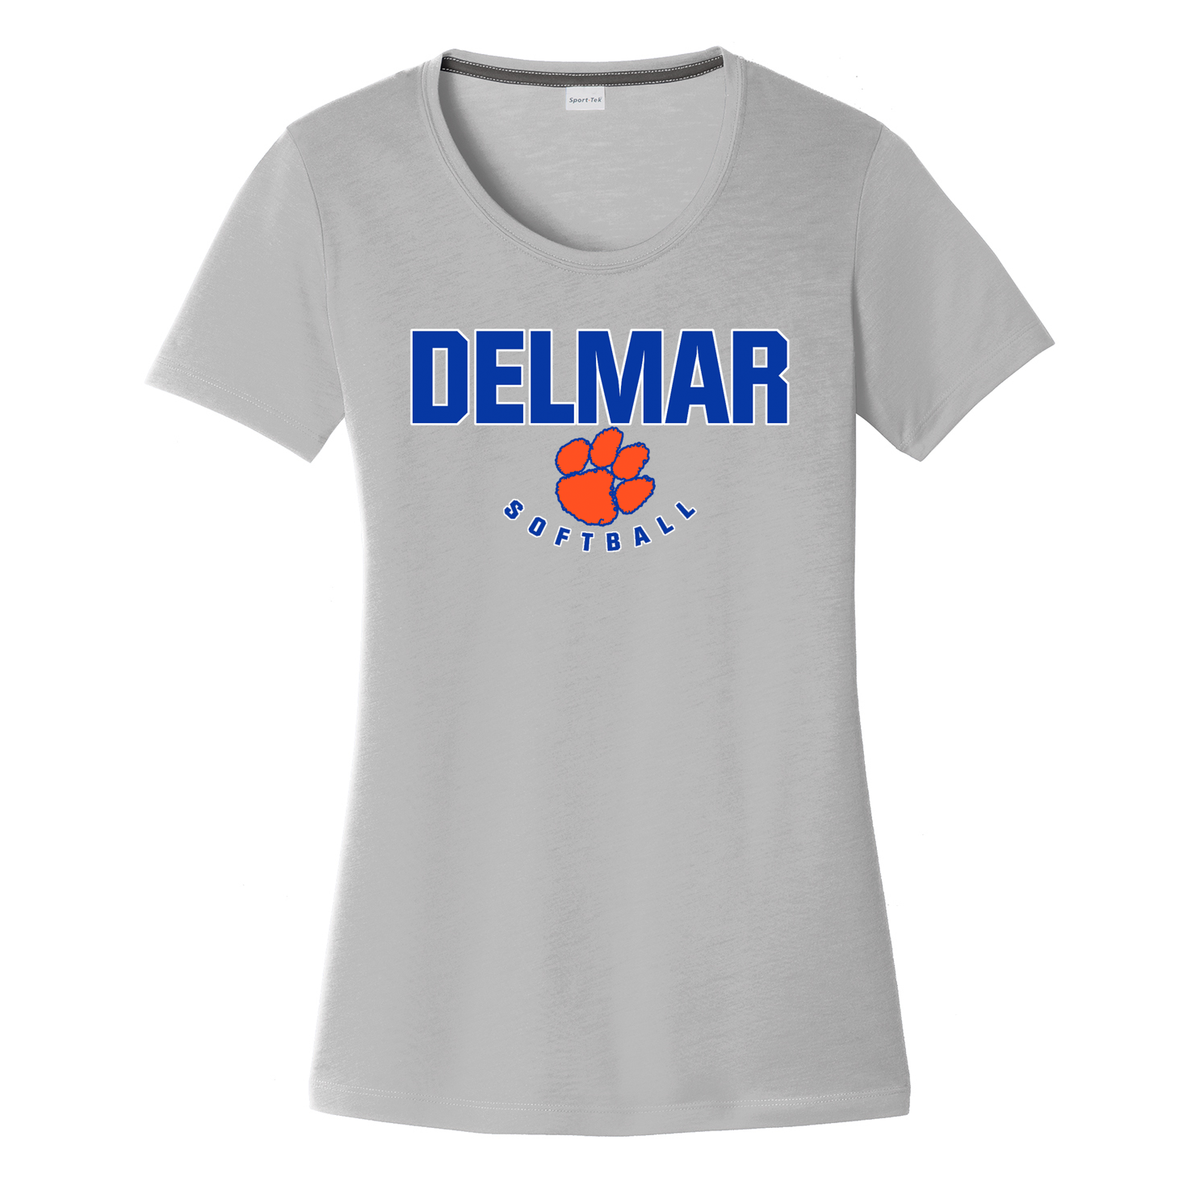 Delmar Softball Women's CottonTouch Performance T-Shirt